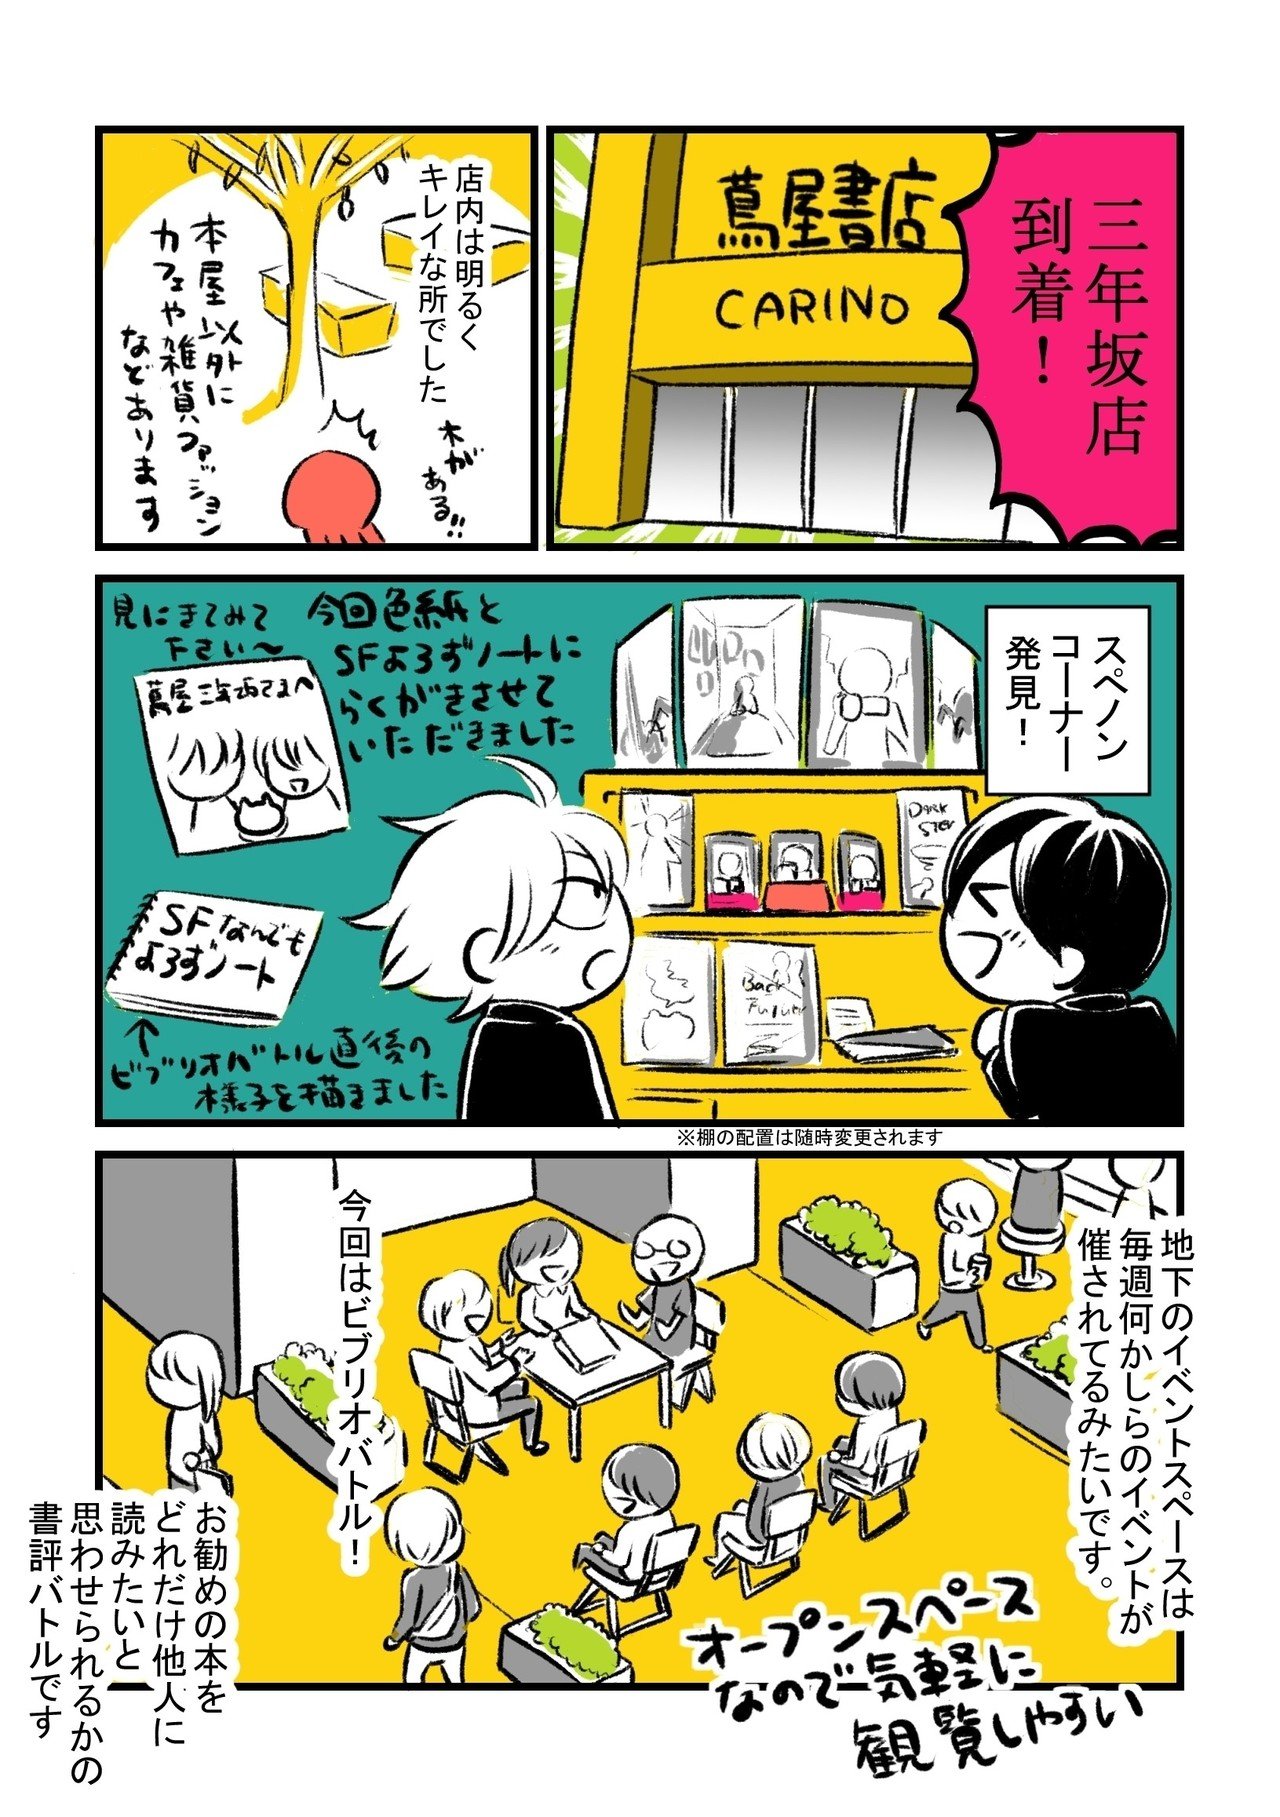 熊本旅行漫画_003